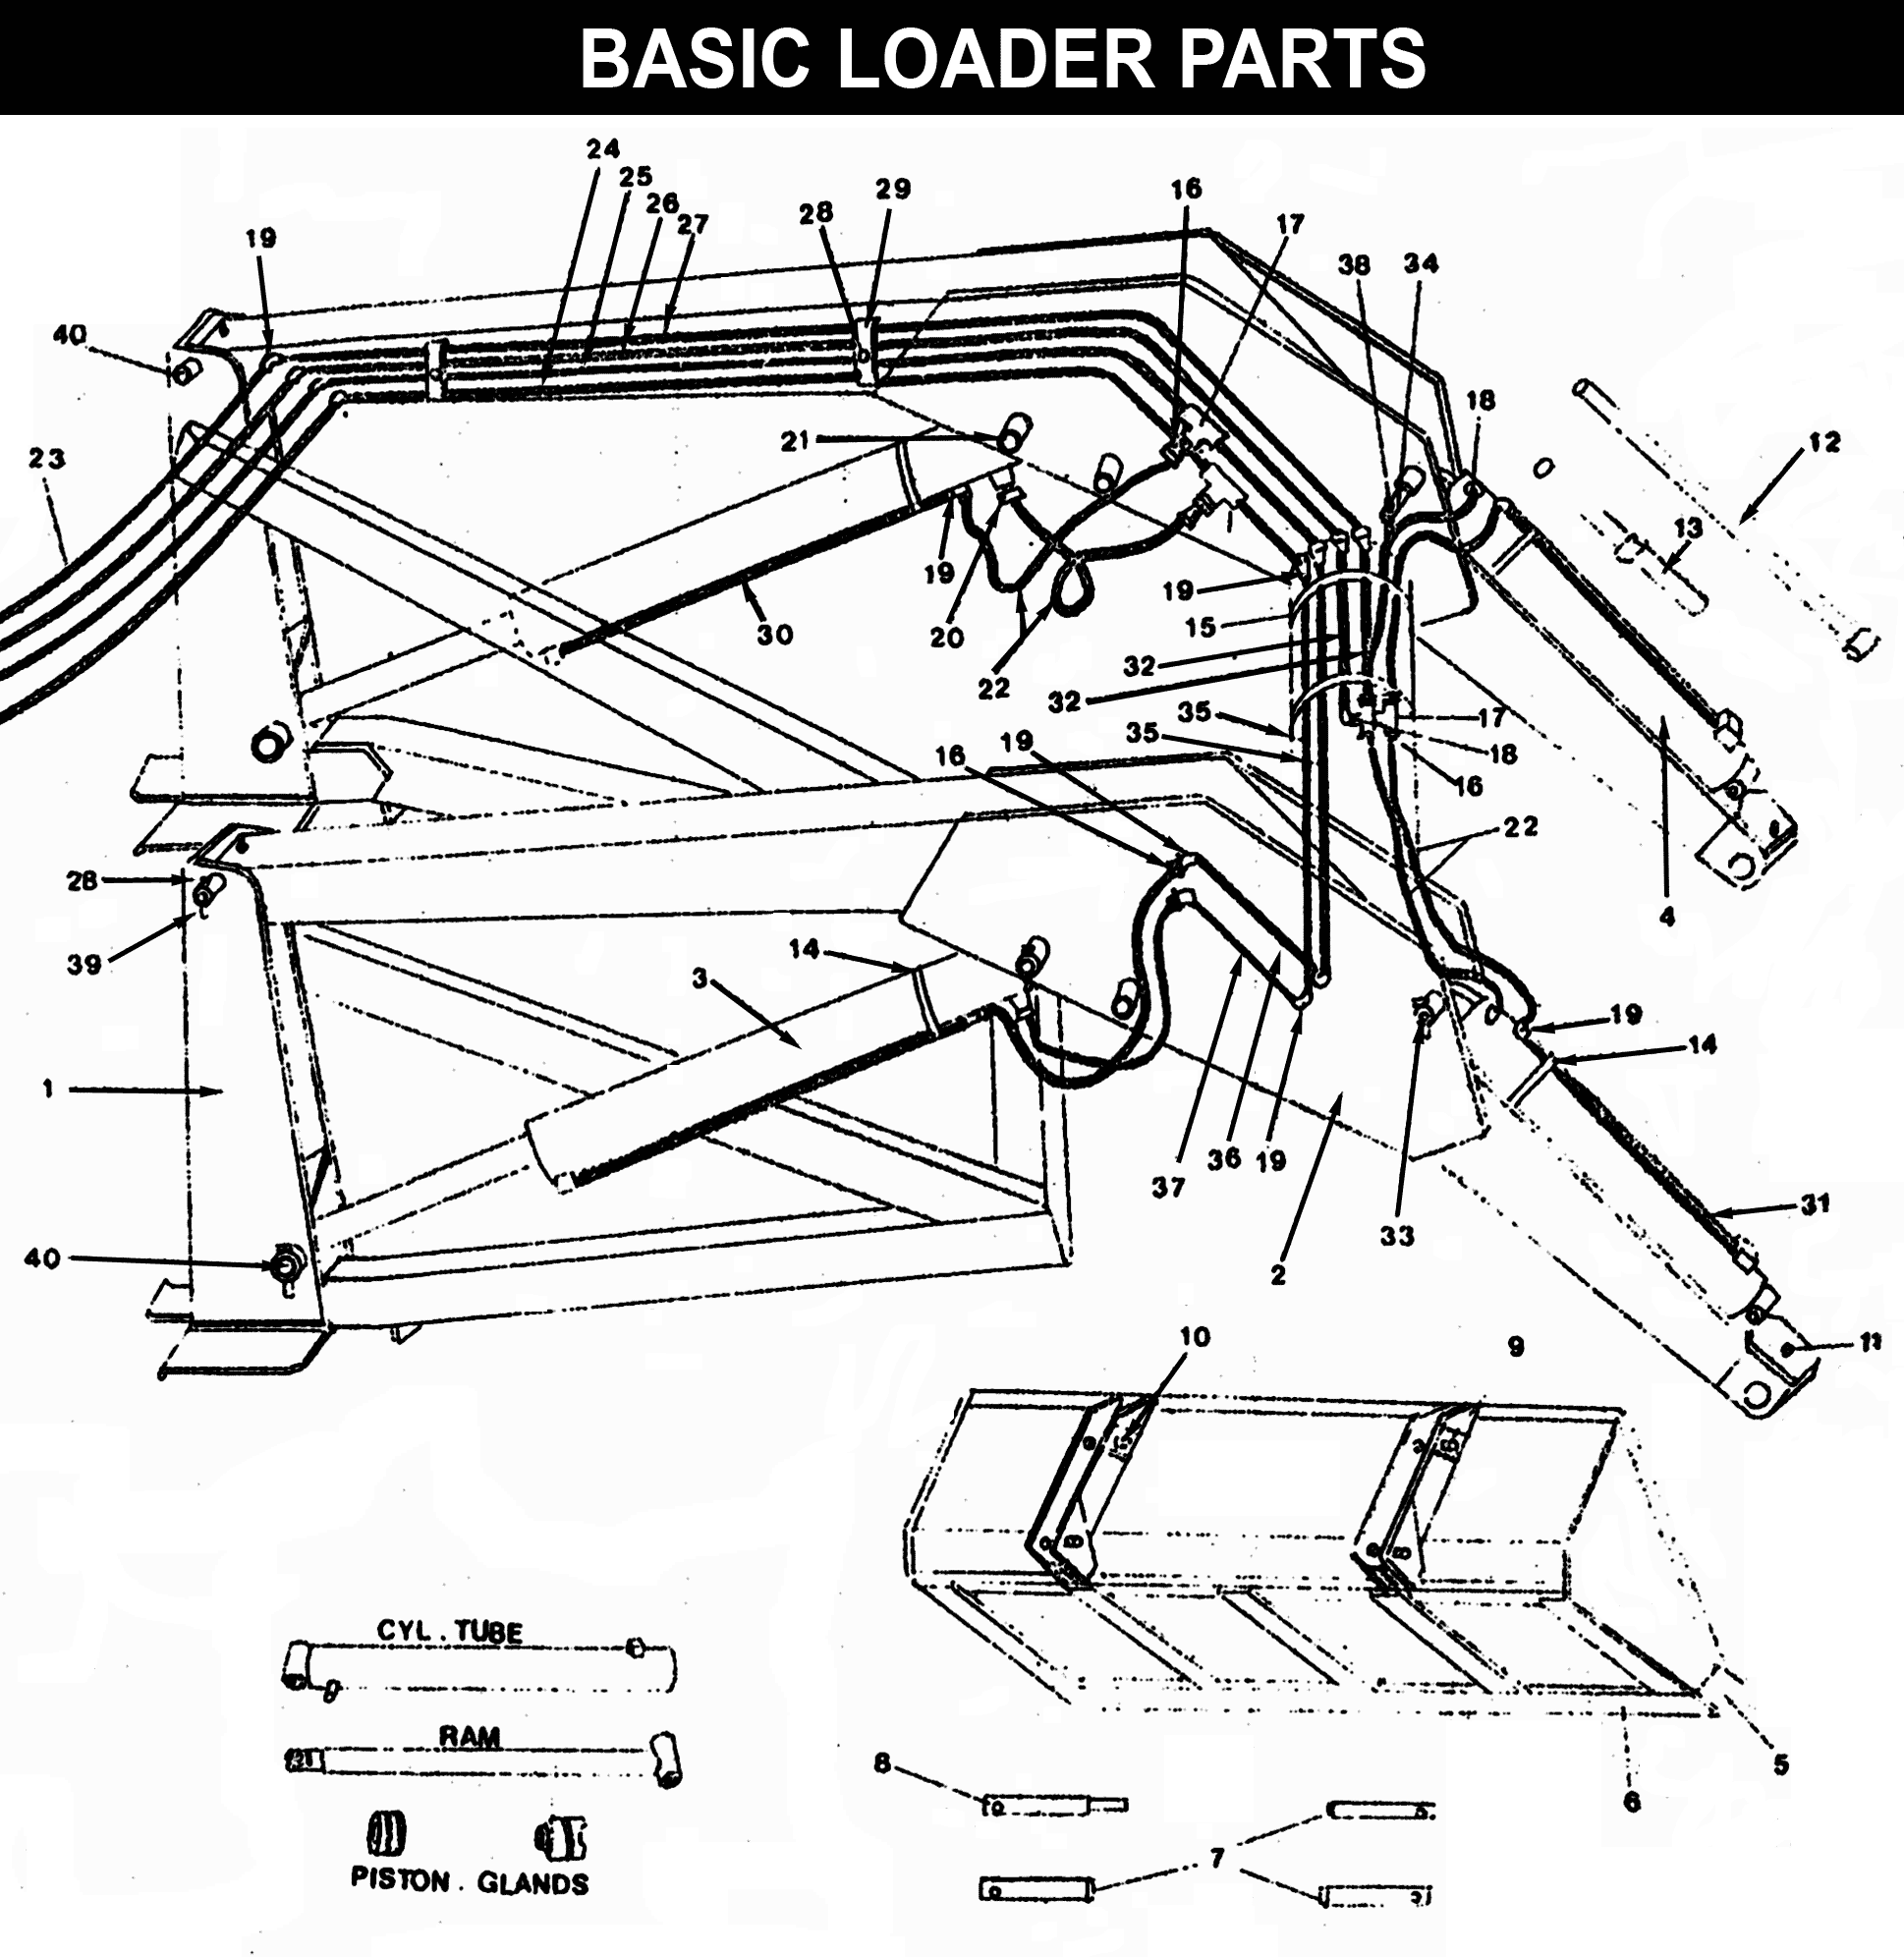 WL-20 Basic Loader Parts